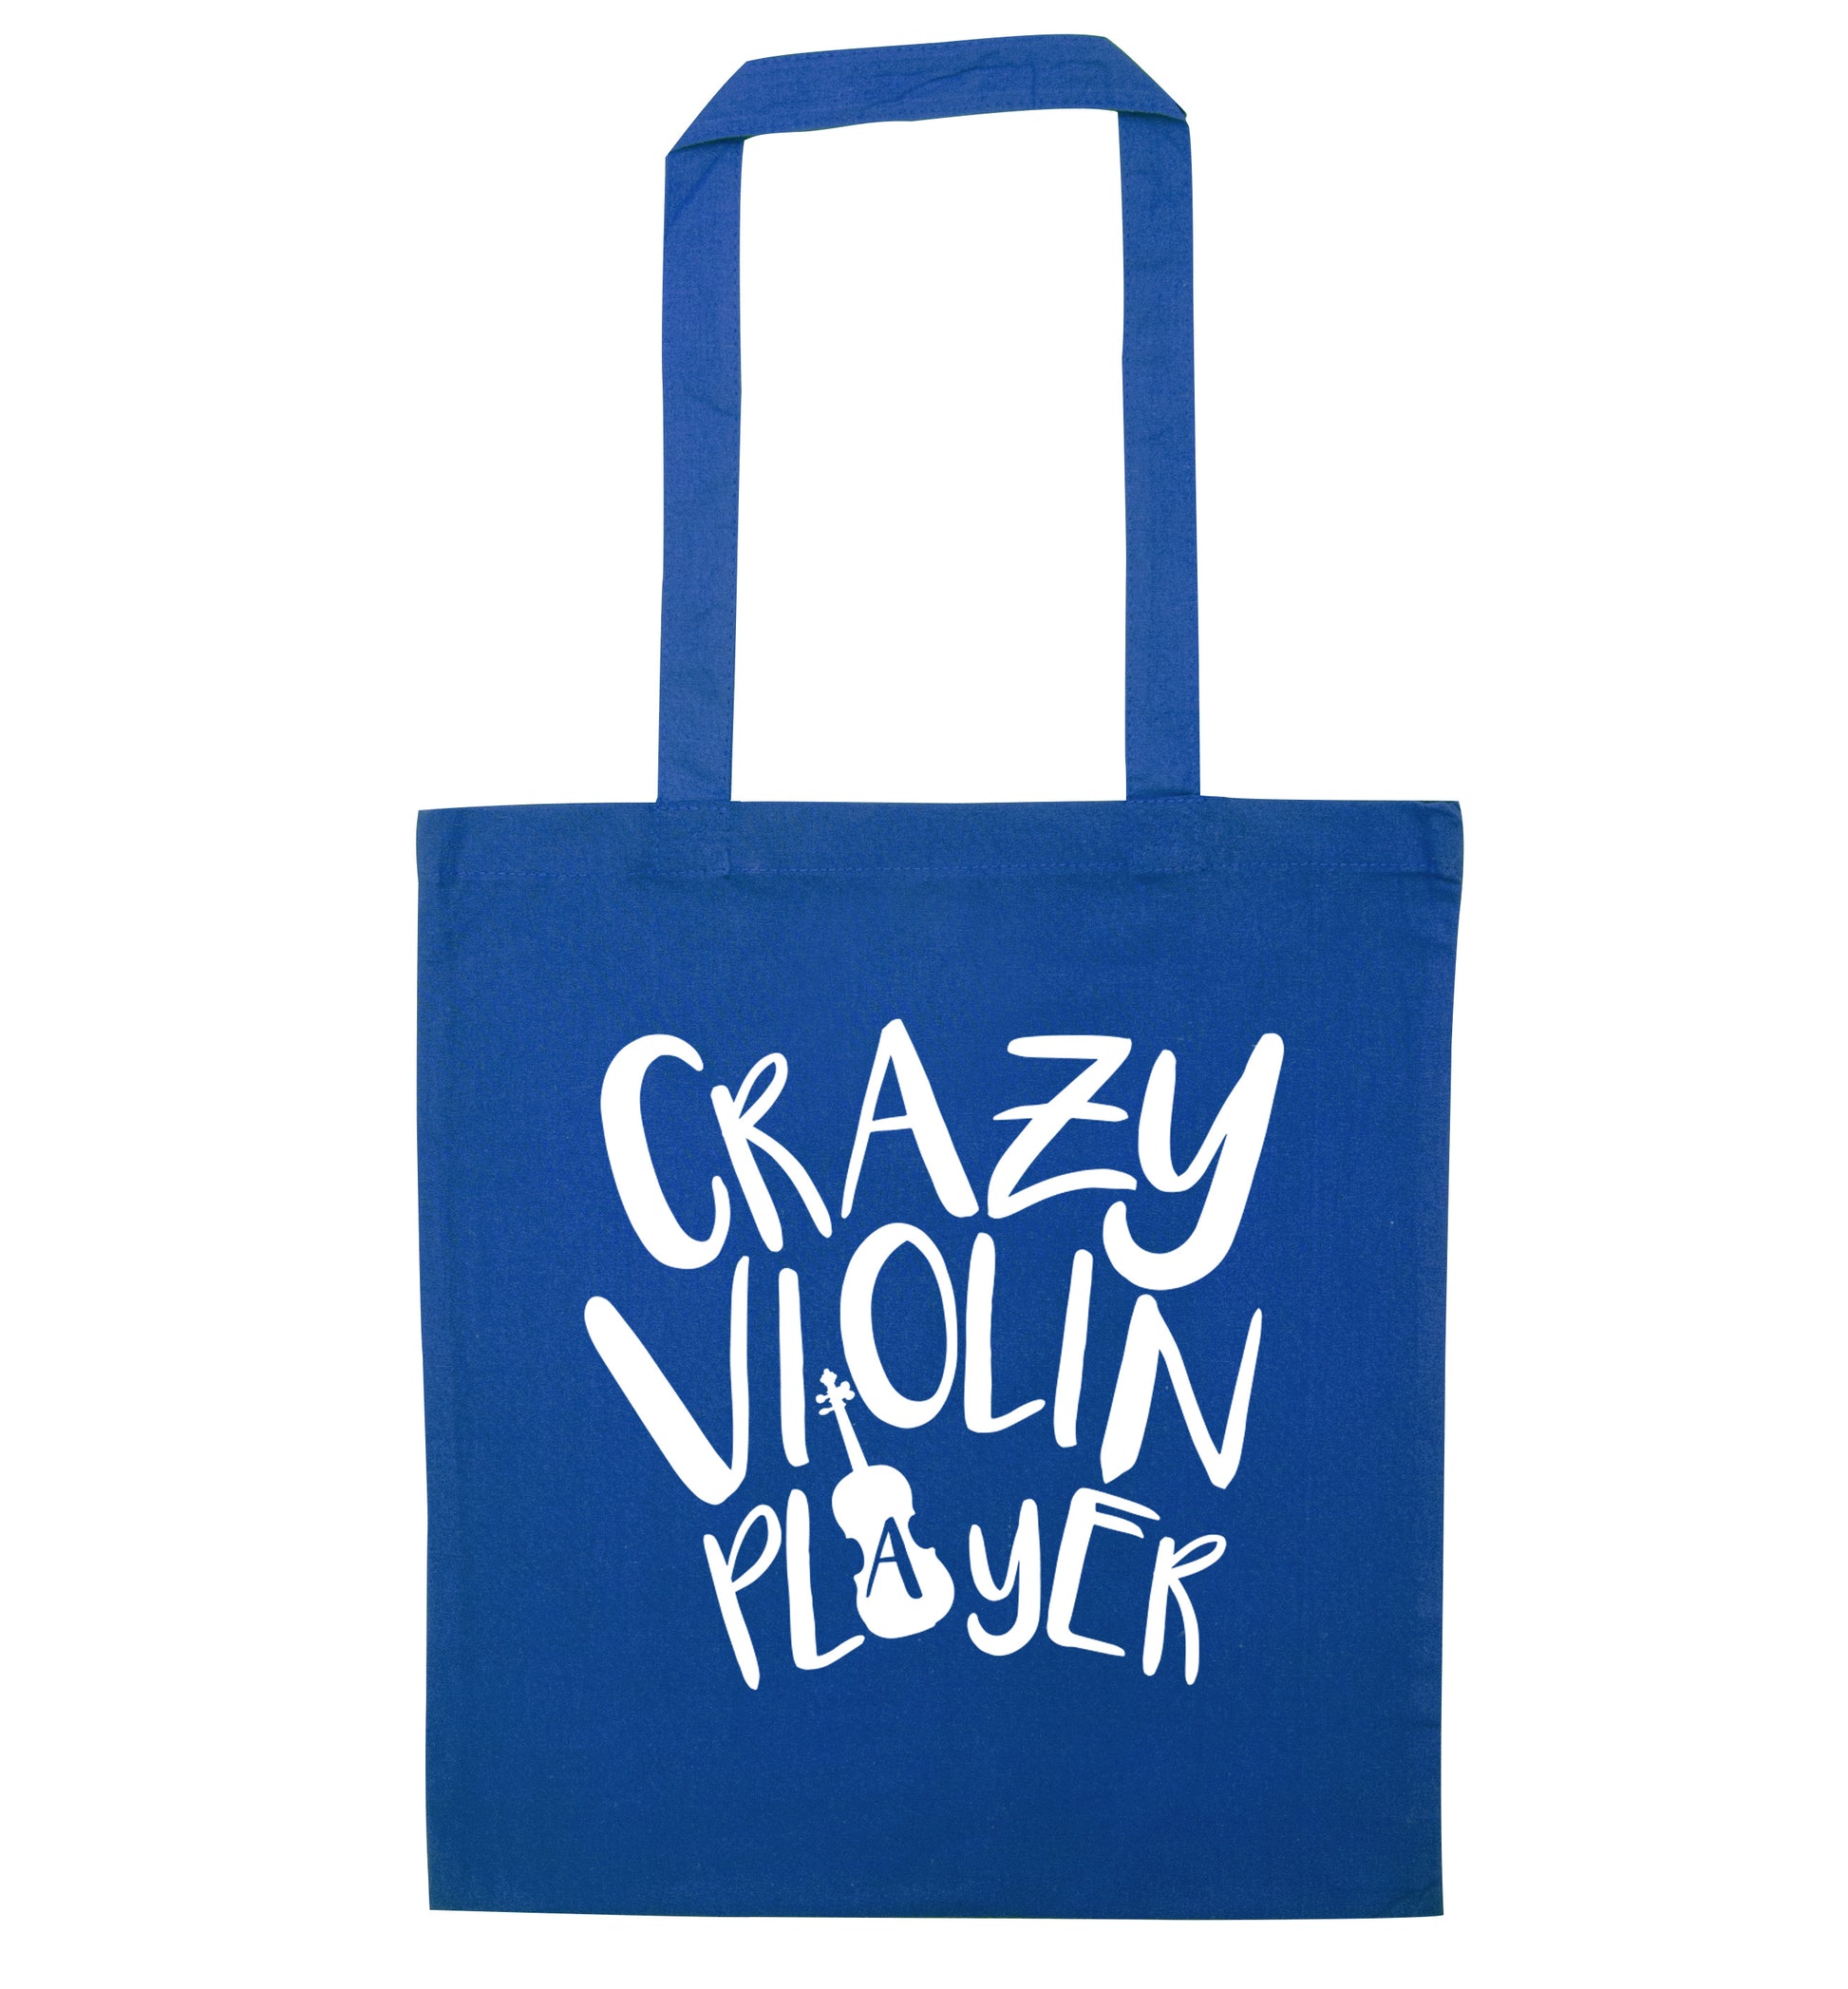 Crazy Violin Player blue tote bag